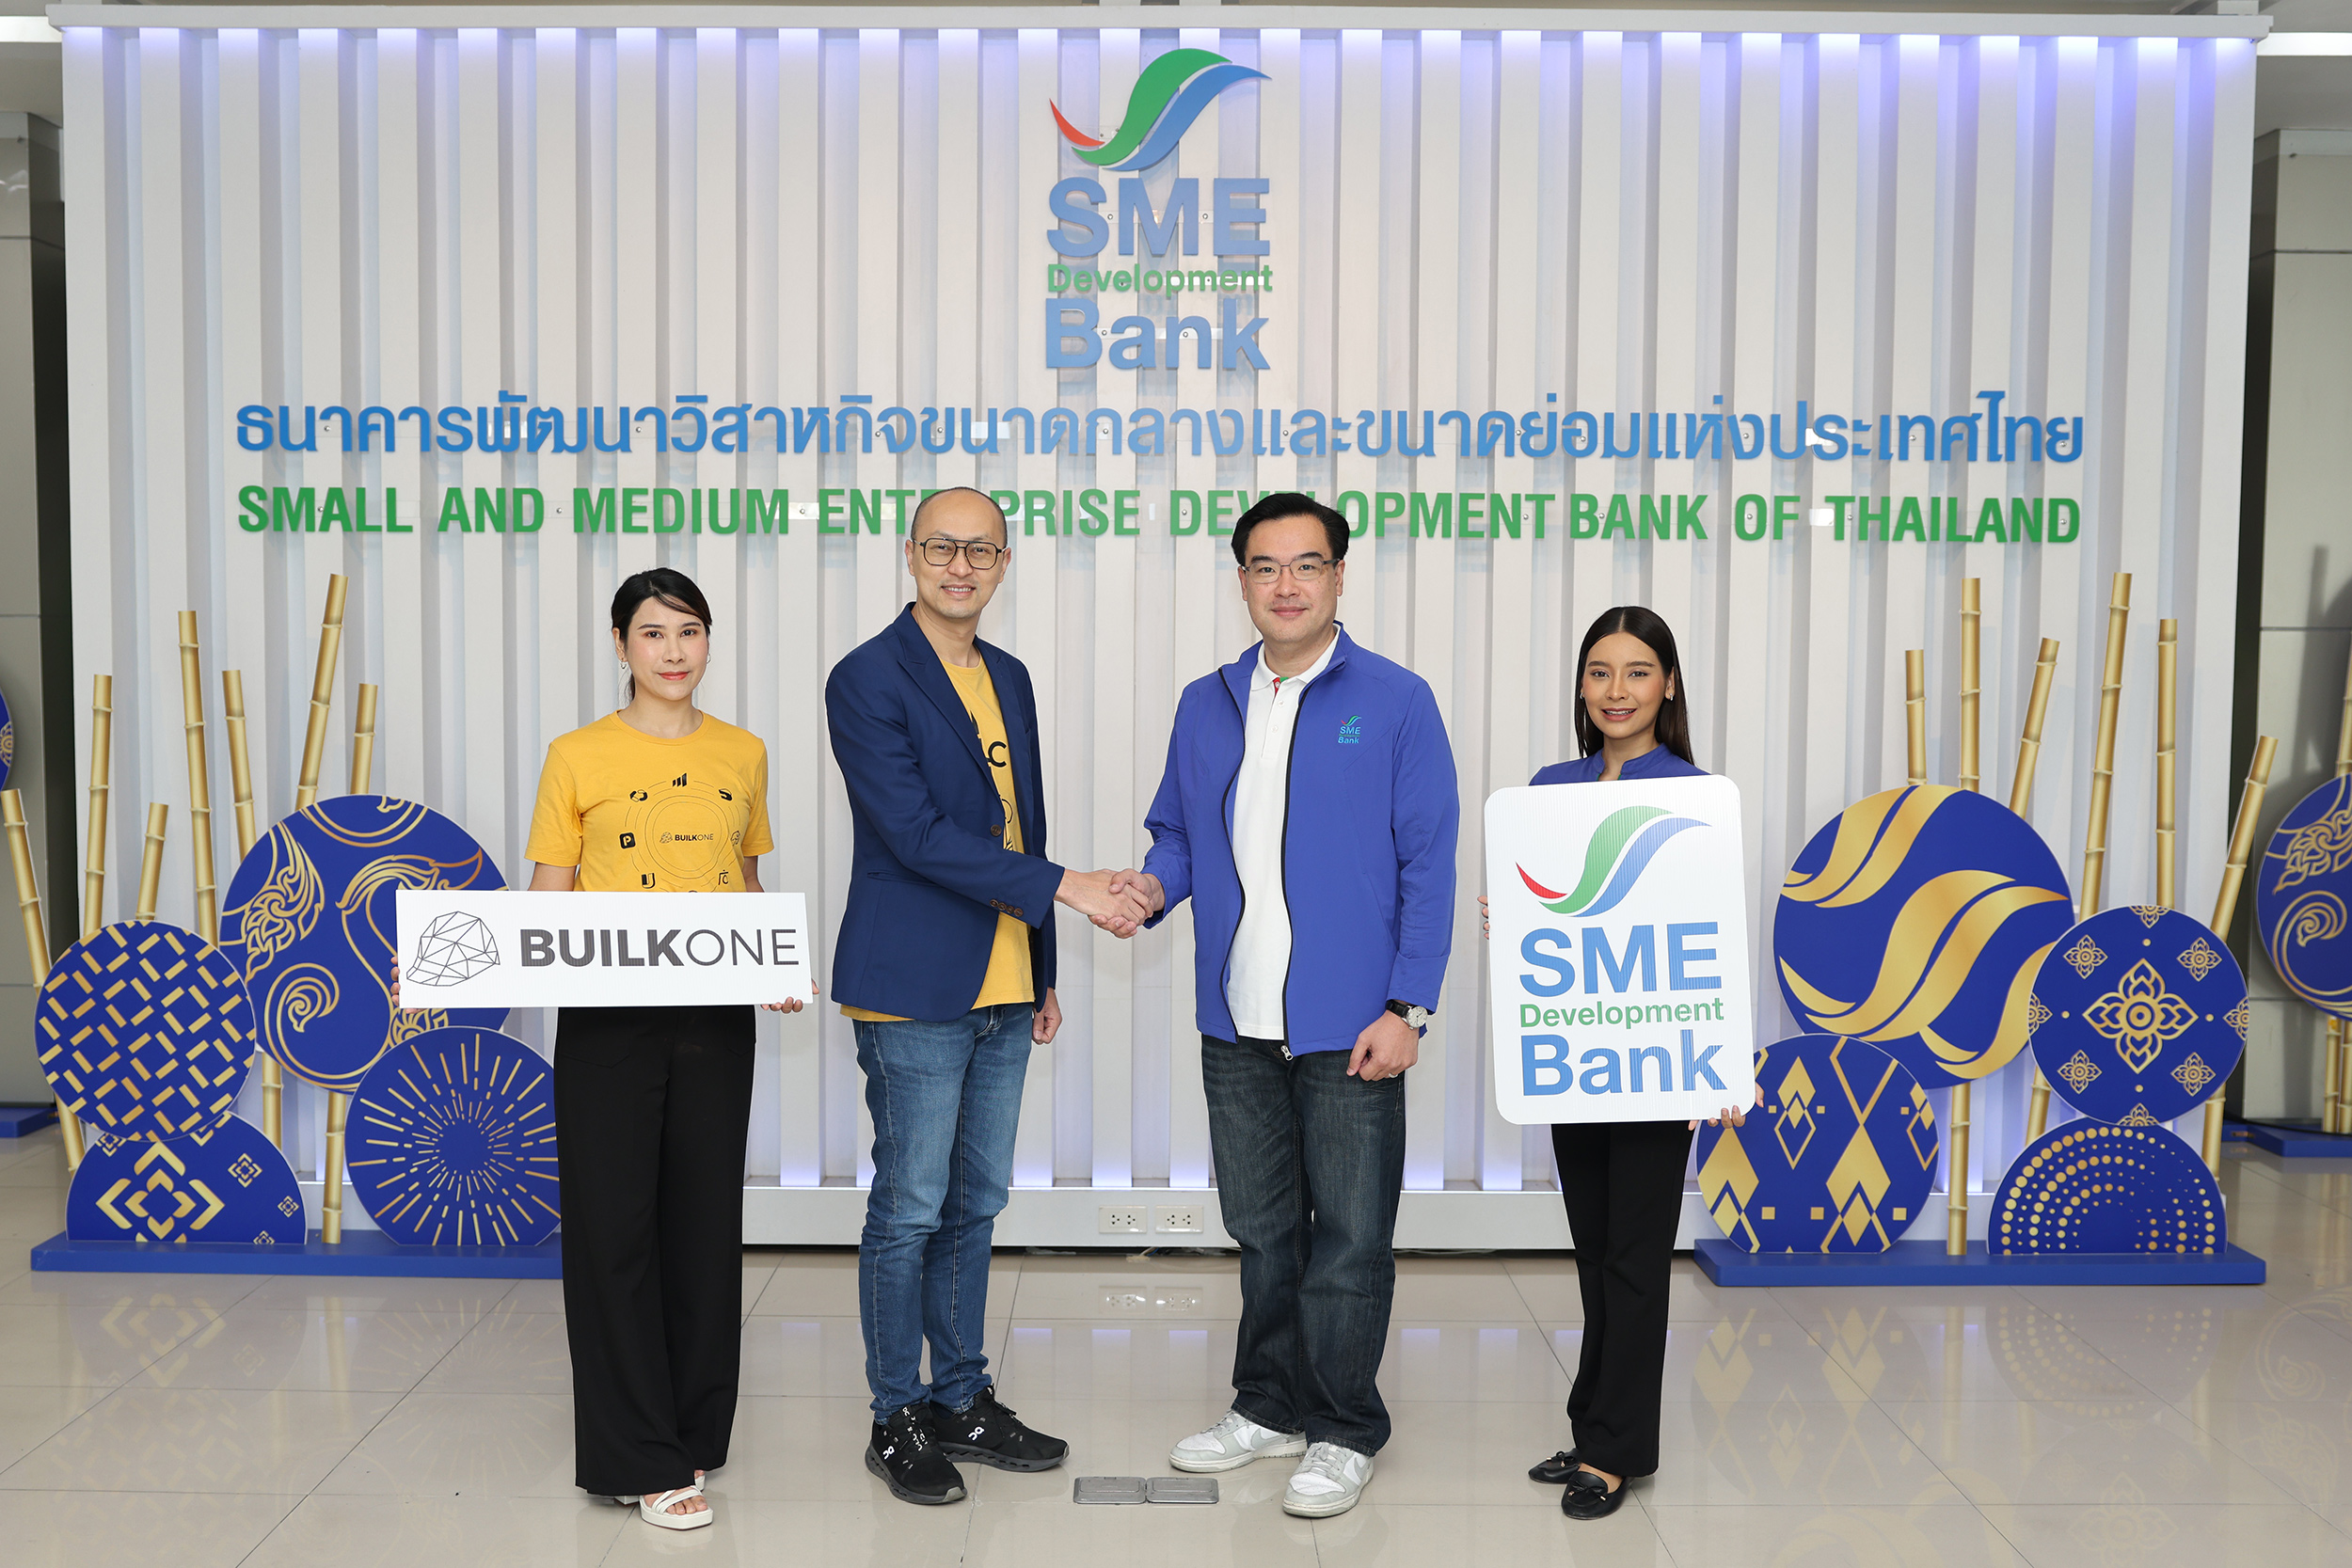 SME D Bank ผนึก BUILK ONE ลุยยกระดับเอสเอ็มอีรับเหมาก่อสร้างทั่วไทยจัดโครงการติดอาวุธธุรกิจด้วยเทคโนโลยี ปูทางถึงแหล่งทุน หนุนรับงานจัดซื้อจัดจ้างภาครัฐ-เอกชน  